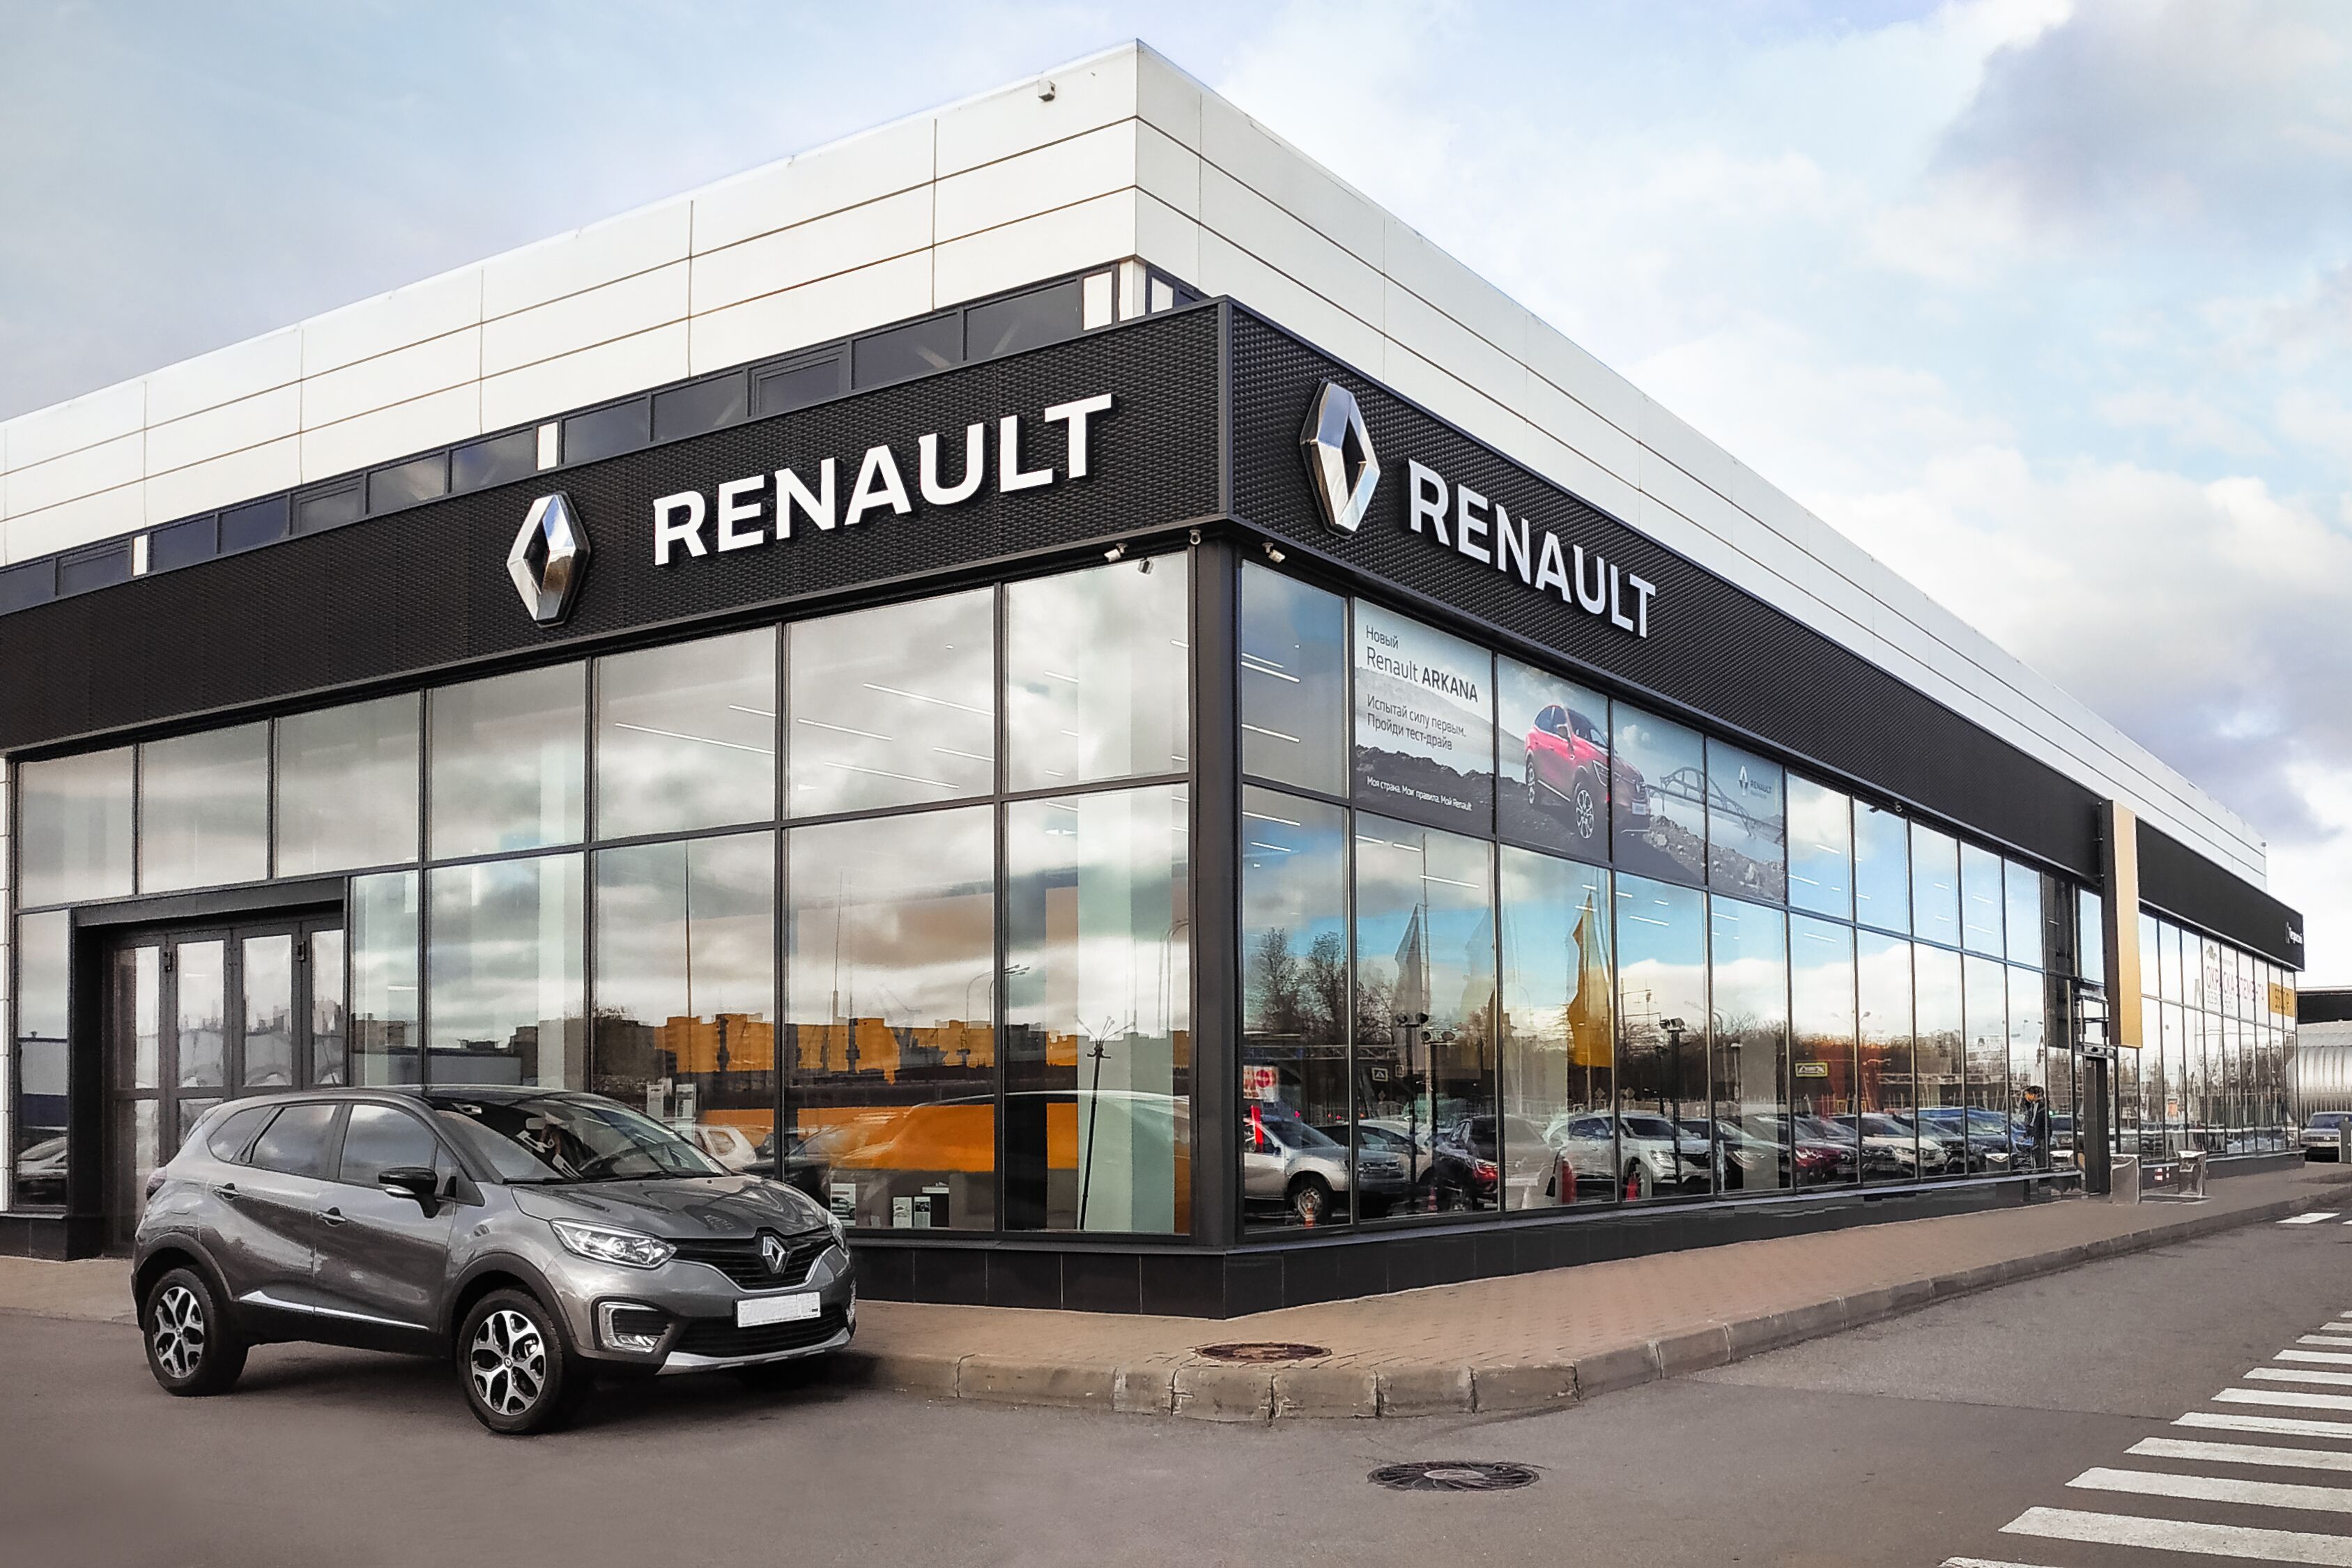 Какова судьба дилеров Renault в России?